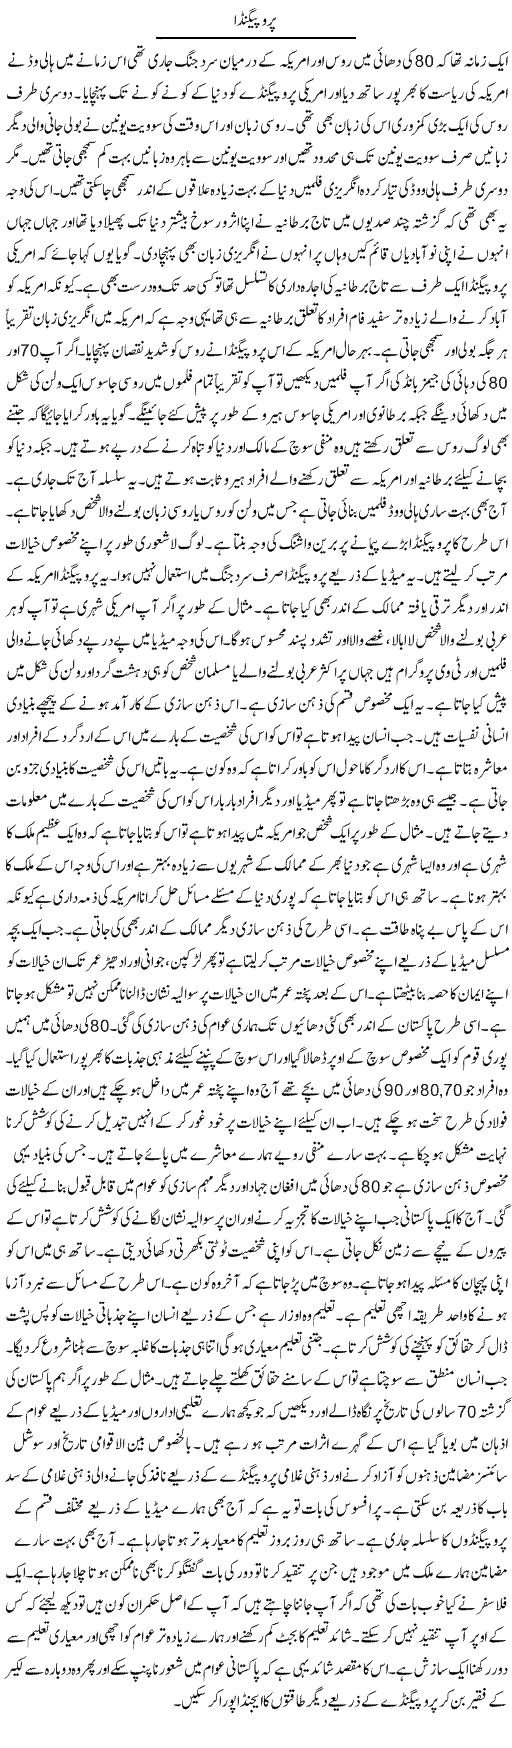 Propaganda | Syed Zeeshan Haider | Daily Urdu Columns